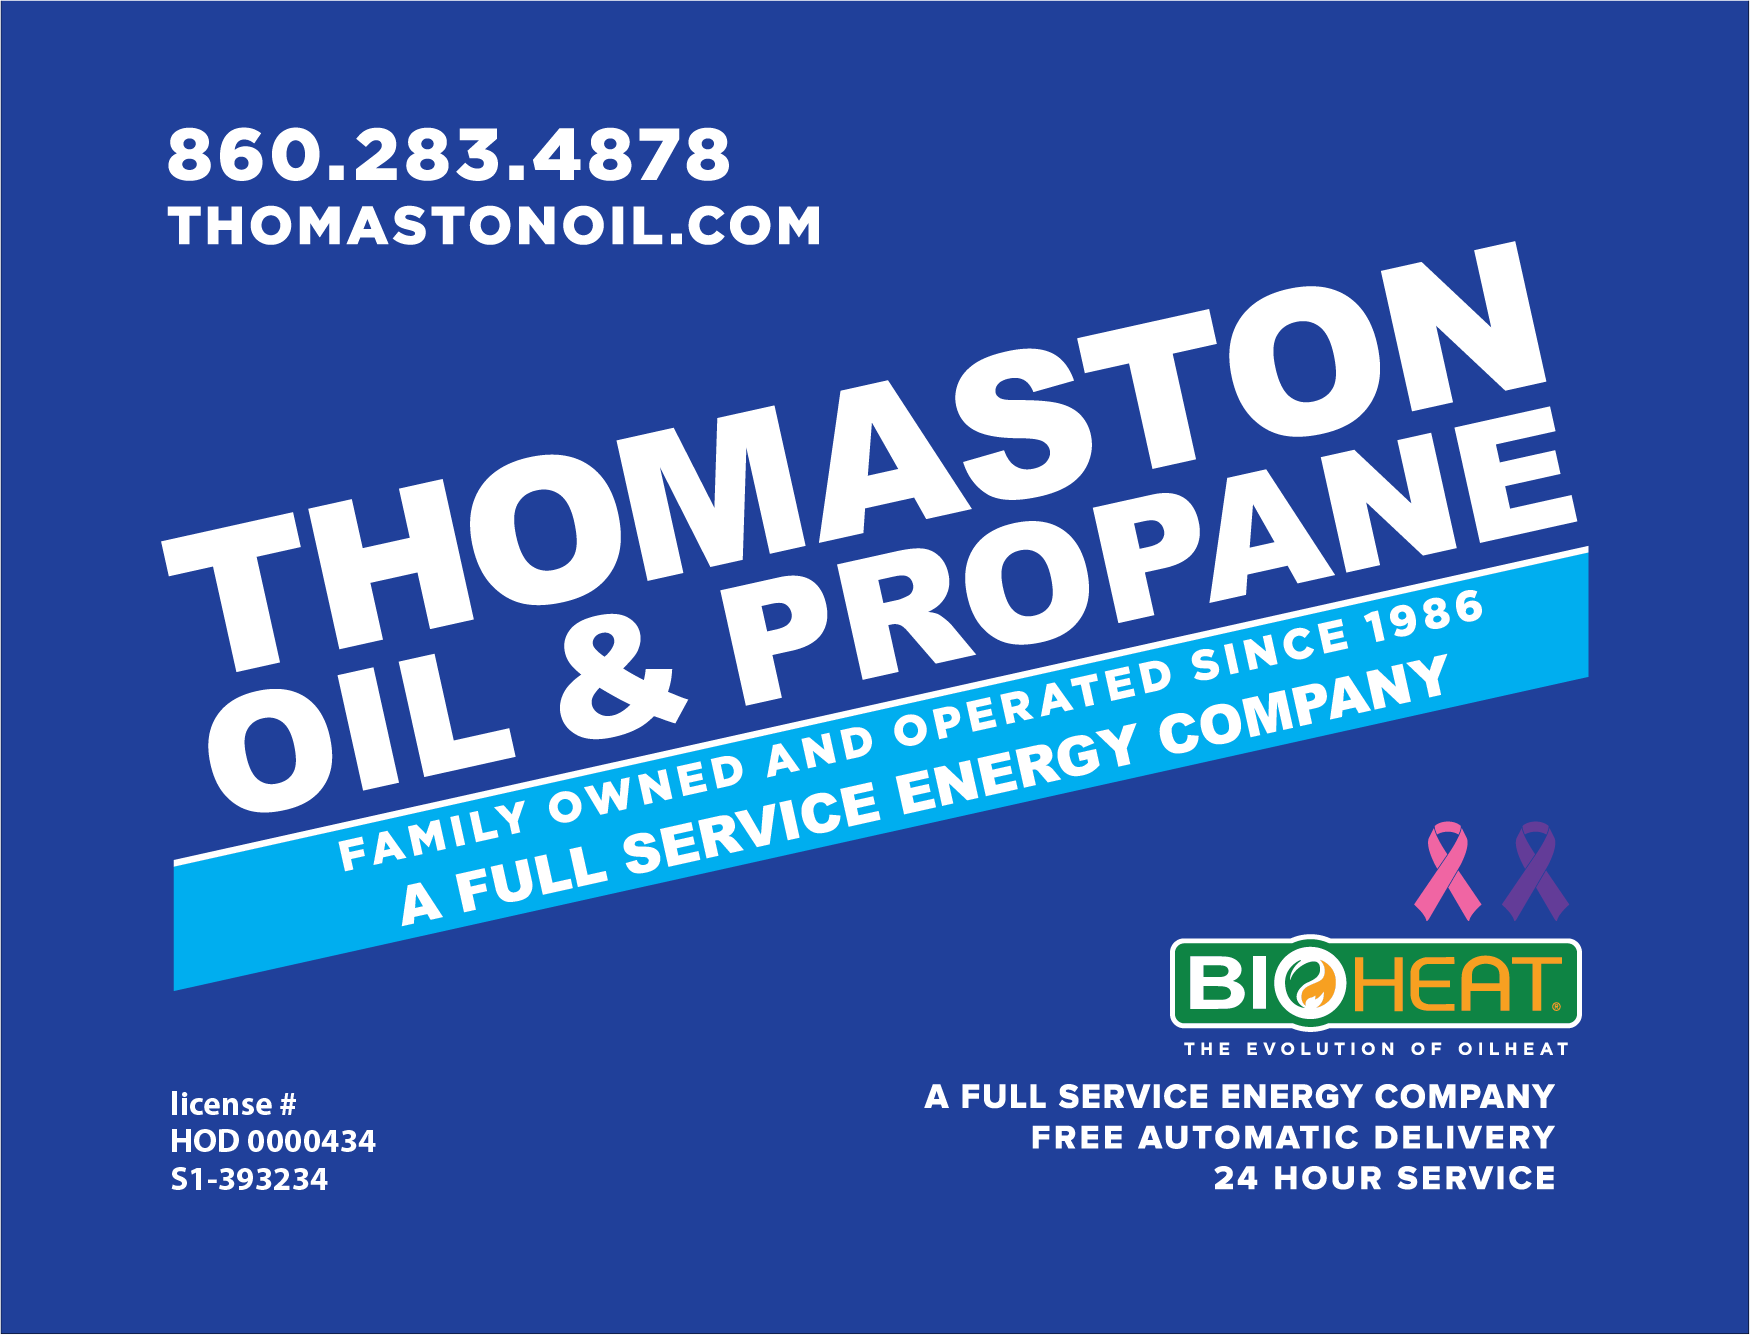 Thomaston Oil & Propane